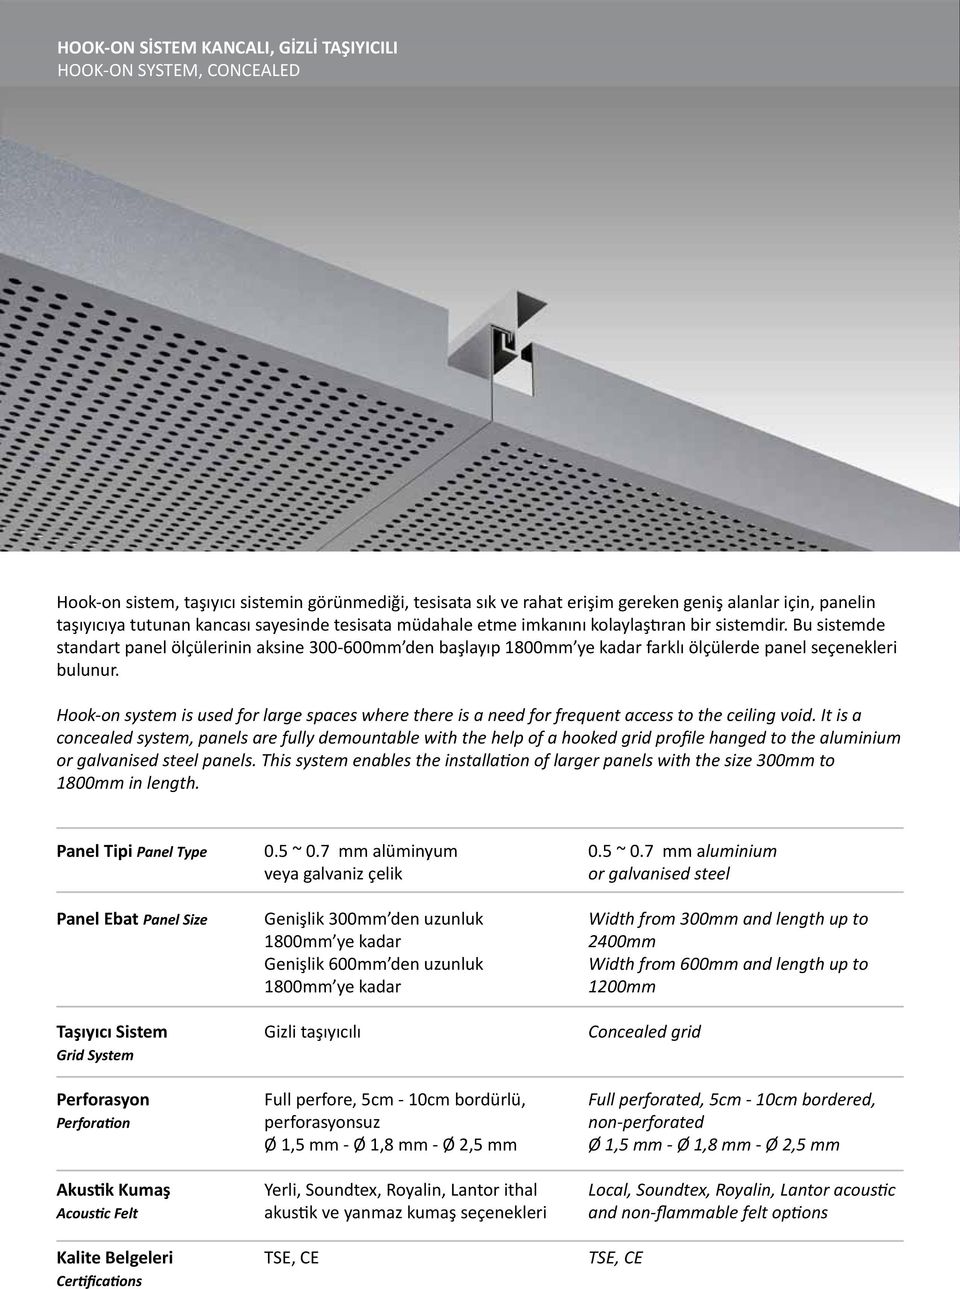 Bu sistemde standart panel ölçülerinin aksine 300-600mm den başlayıp 1800mm ye kadar farklı ölçülerde panel seçenekleri bulunur.